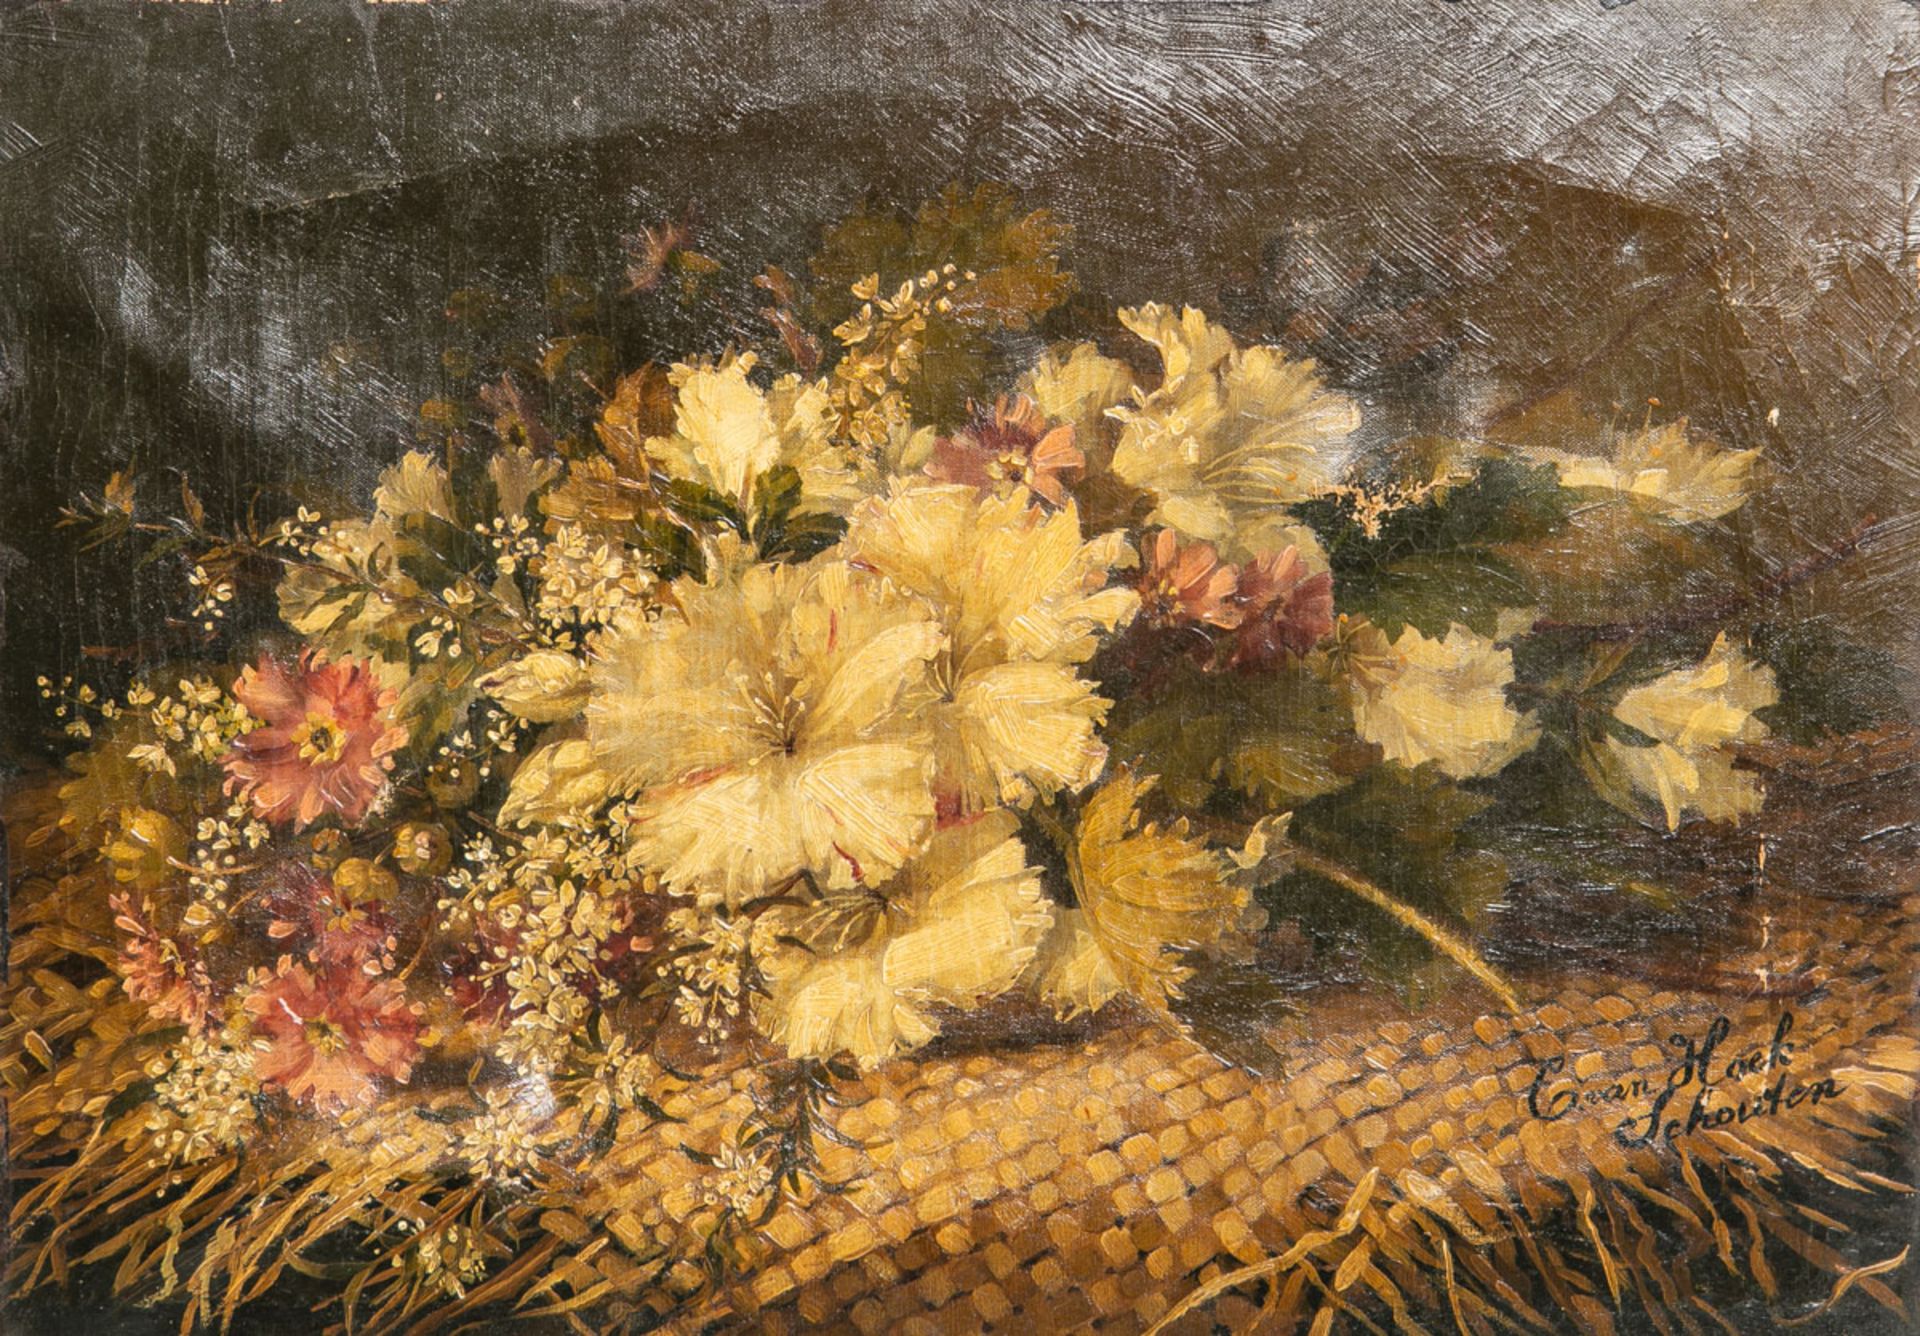 van Hoek Schouten, Cornelia (1849 - 1929), Stillleben eines Blumenbouquets